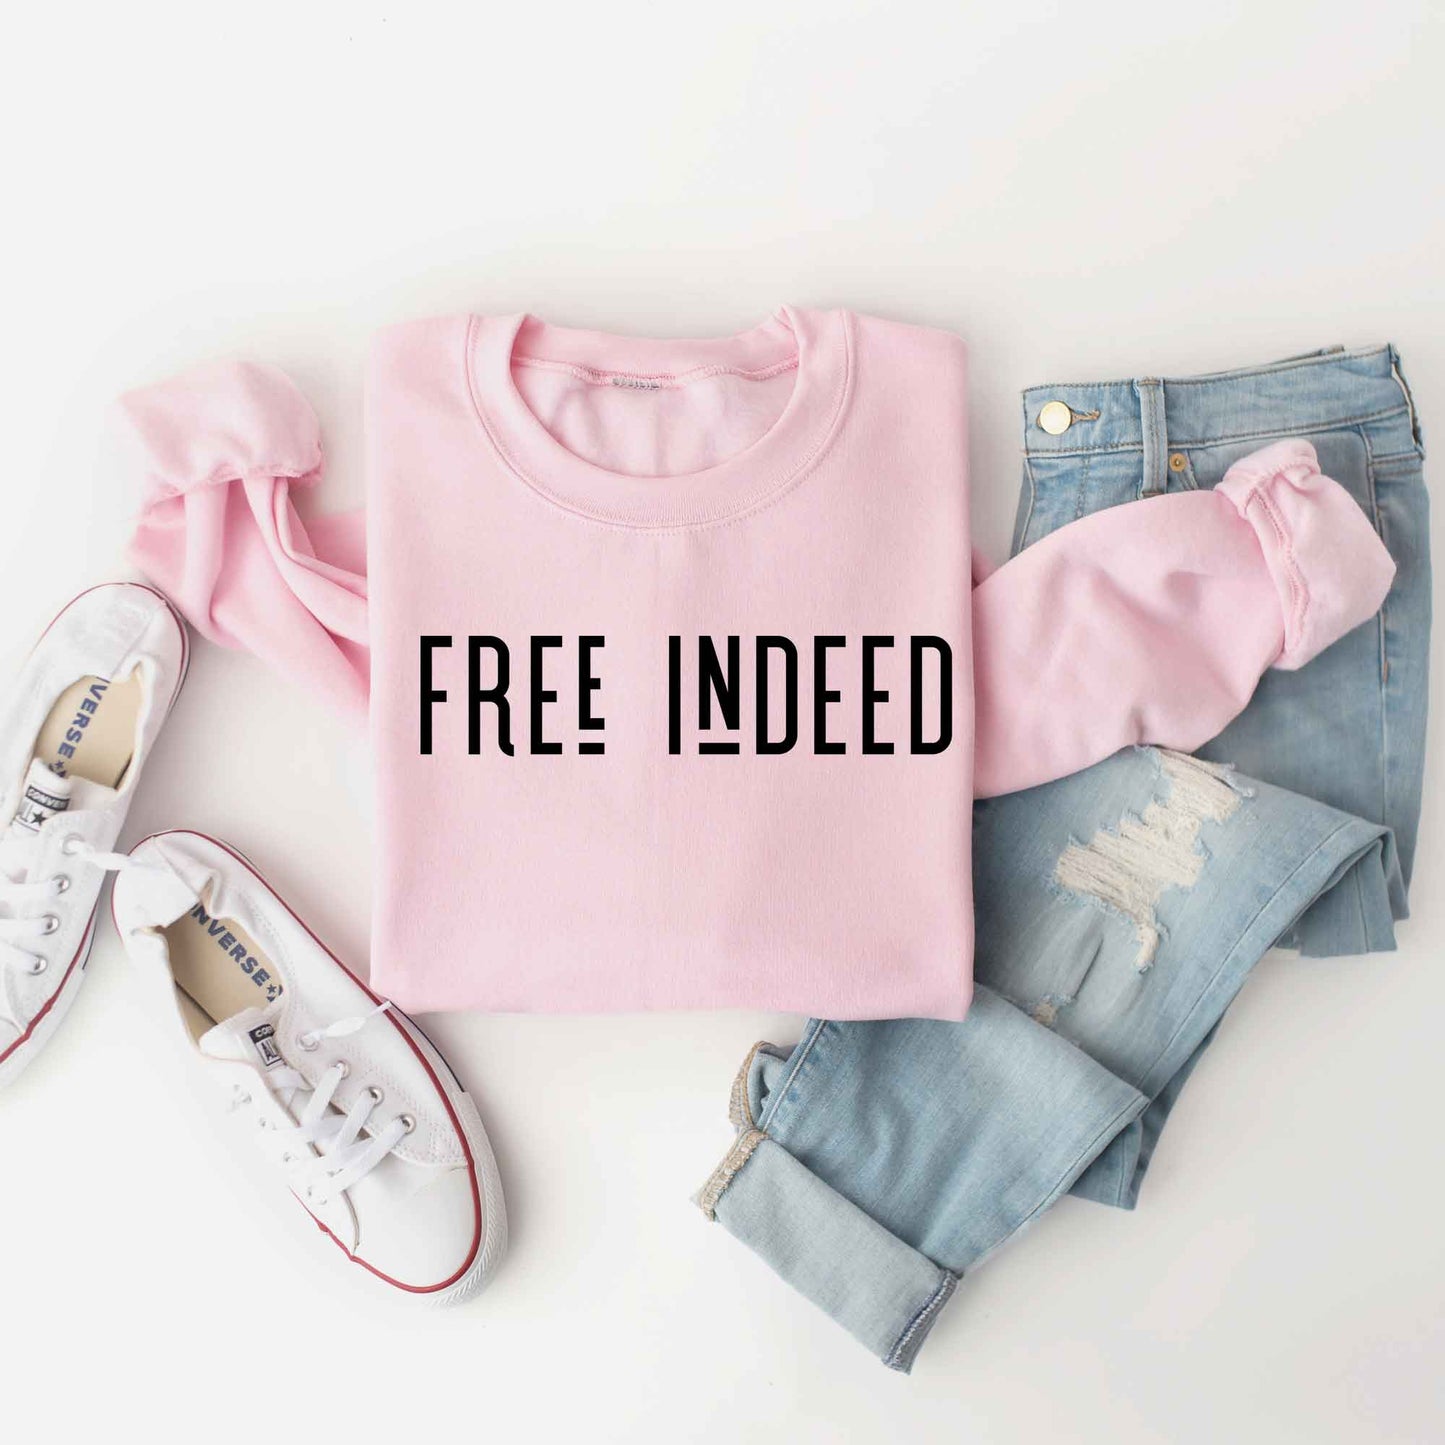 Free Indeed | Sweatshirt